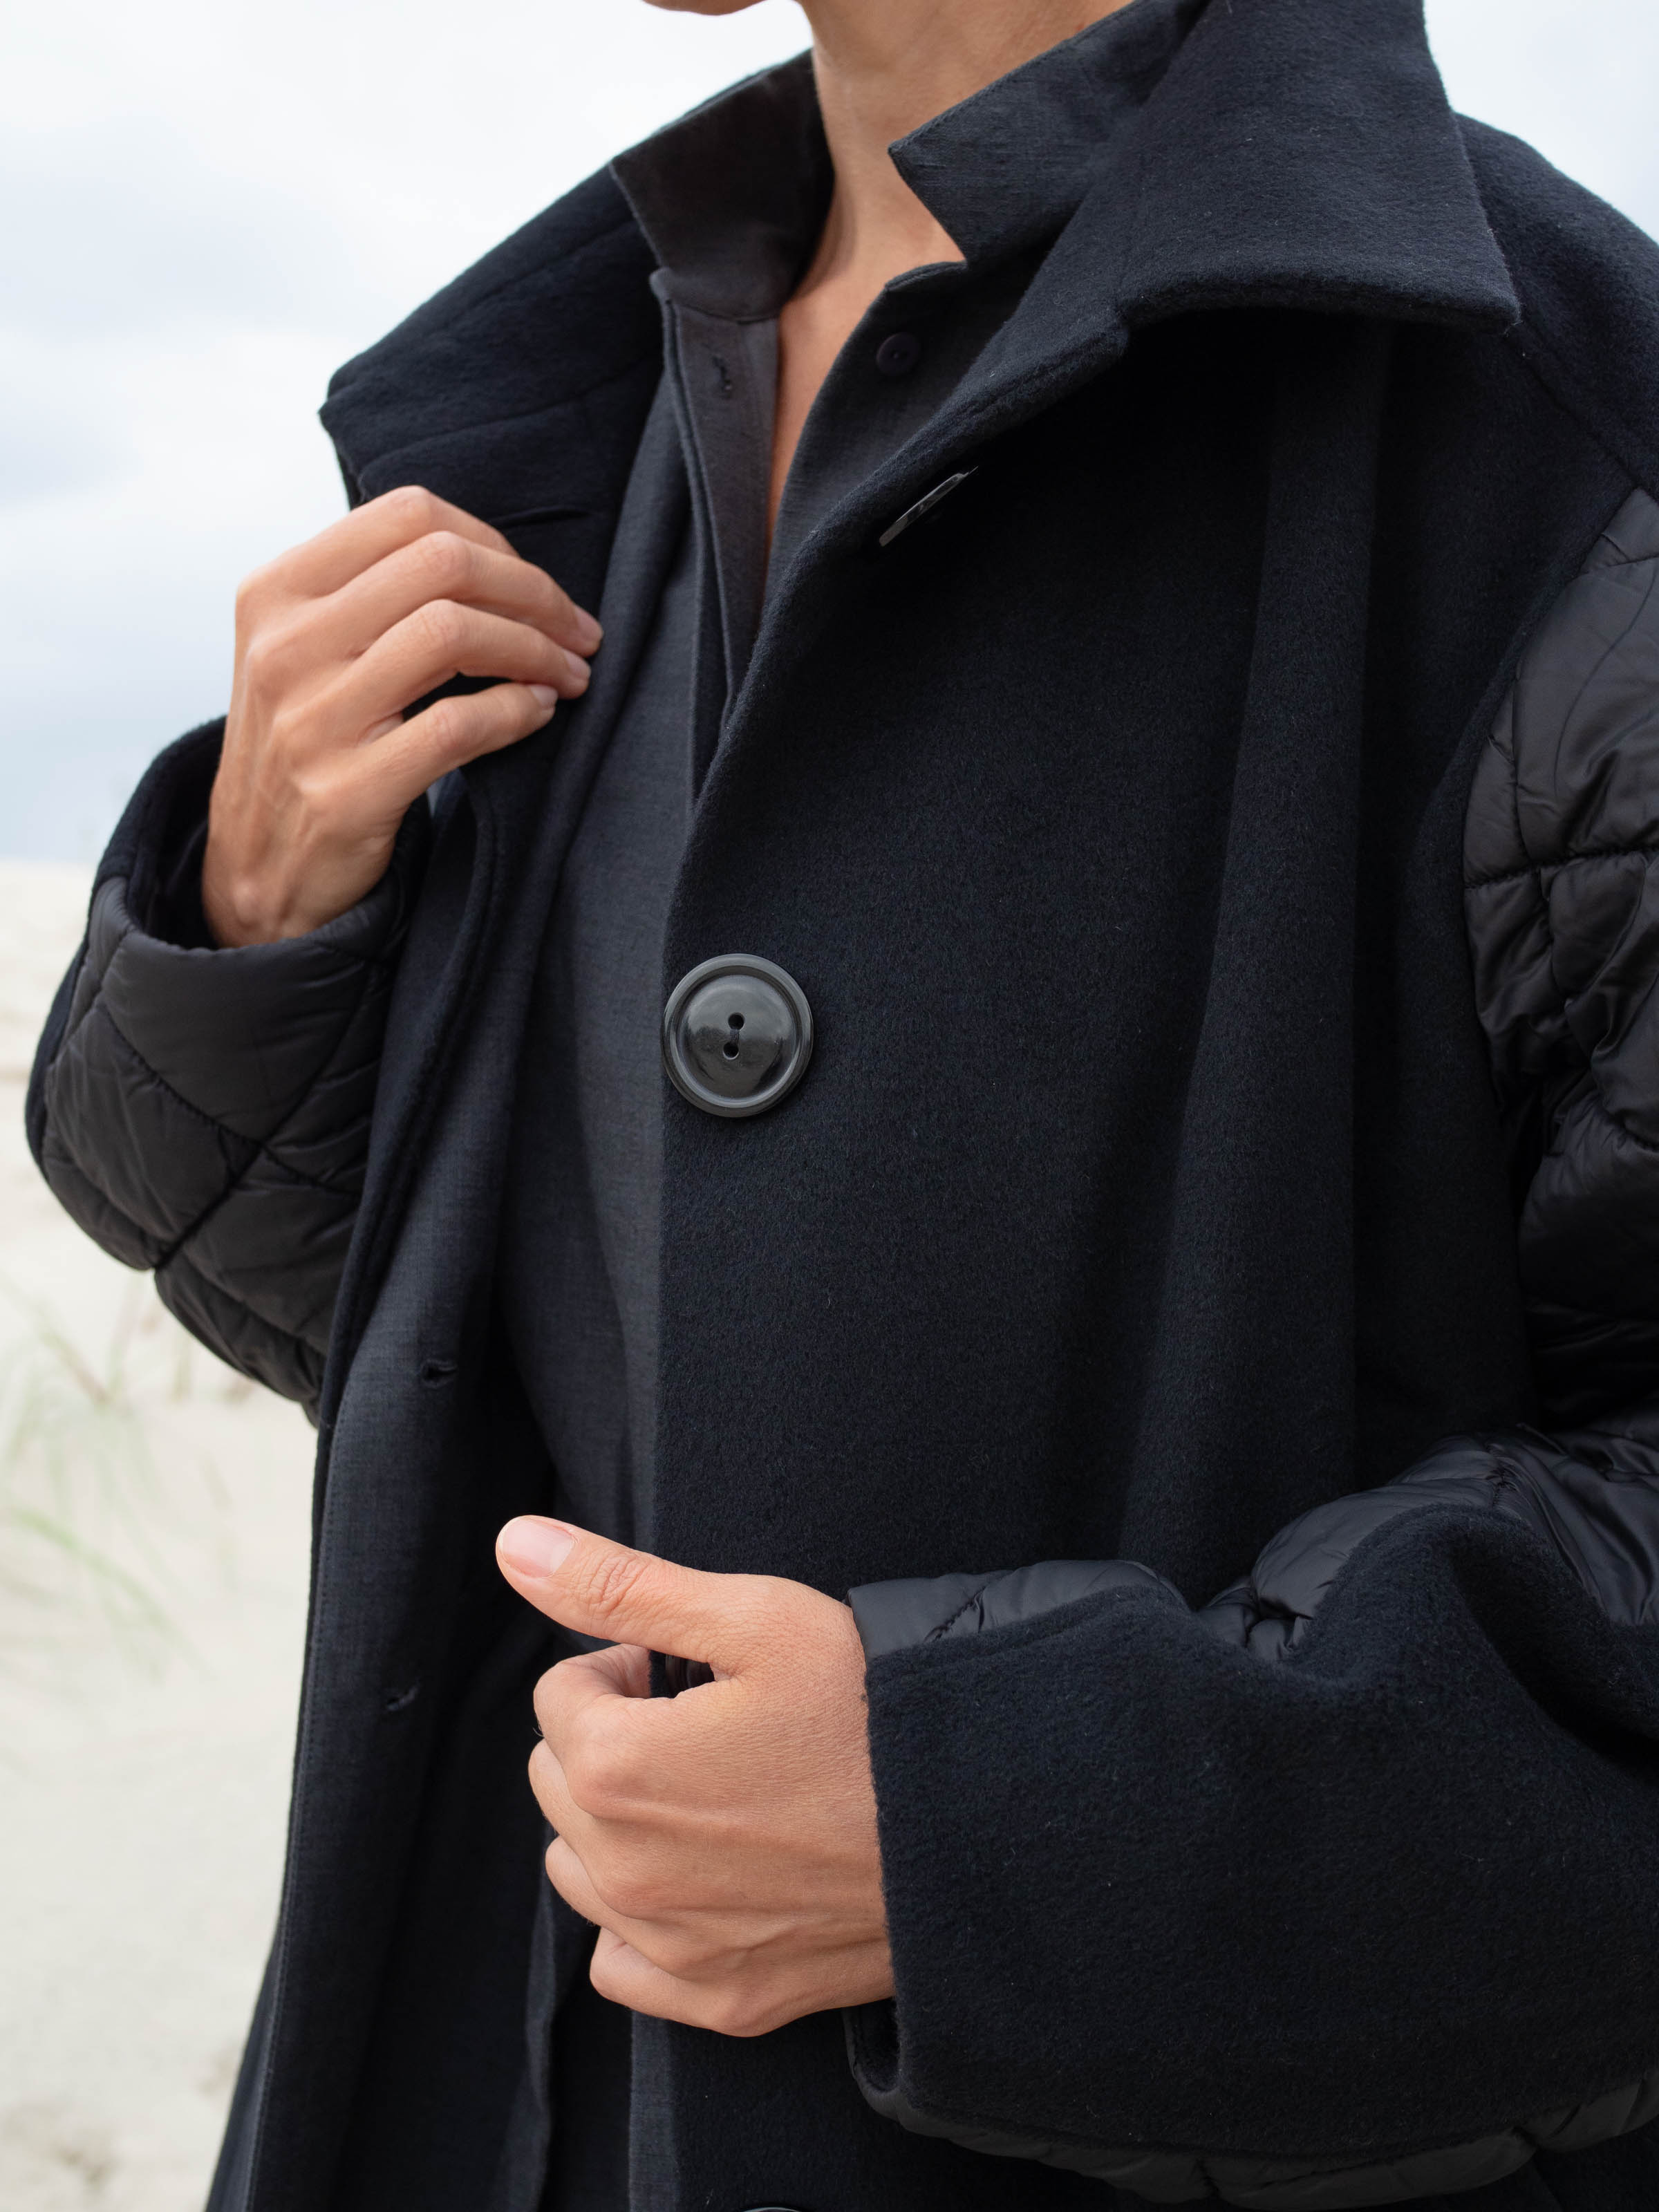 Пальто Комбинированное 00 Черный (noir) от Lesel (Лесель)! Заказывайте по ✆ 8 (800) 777 02 37